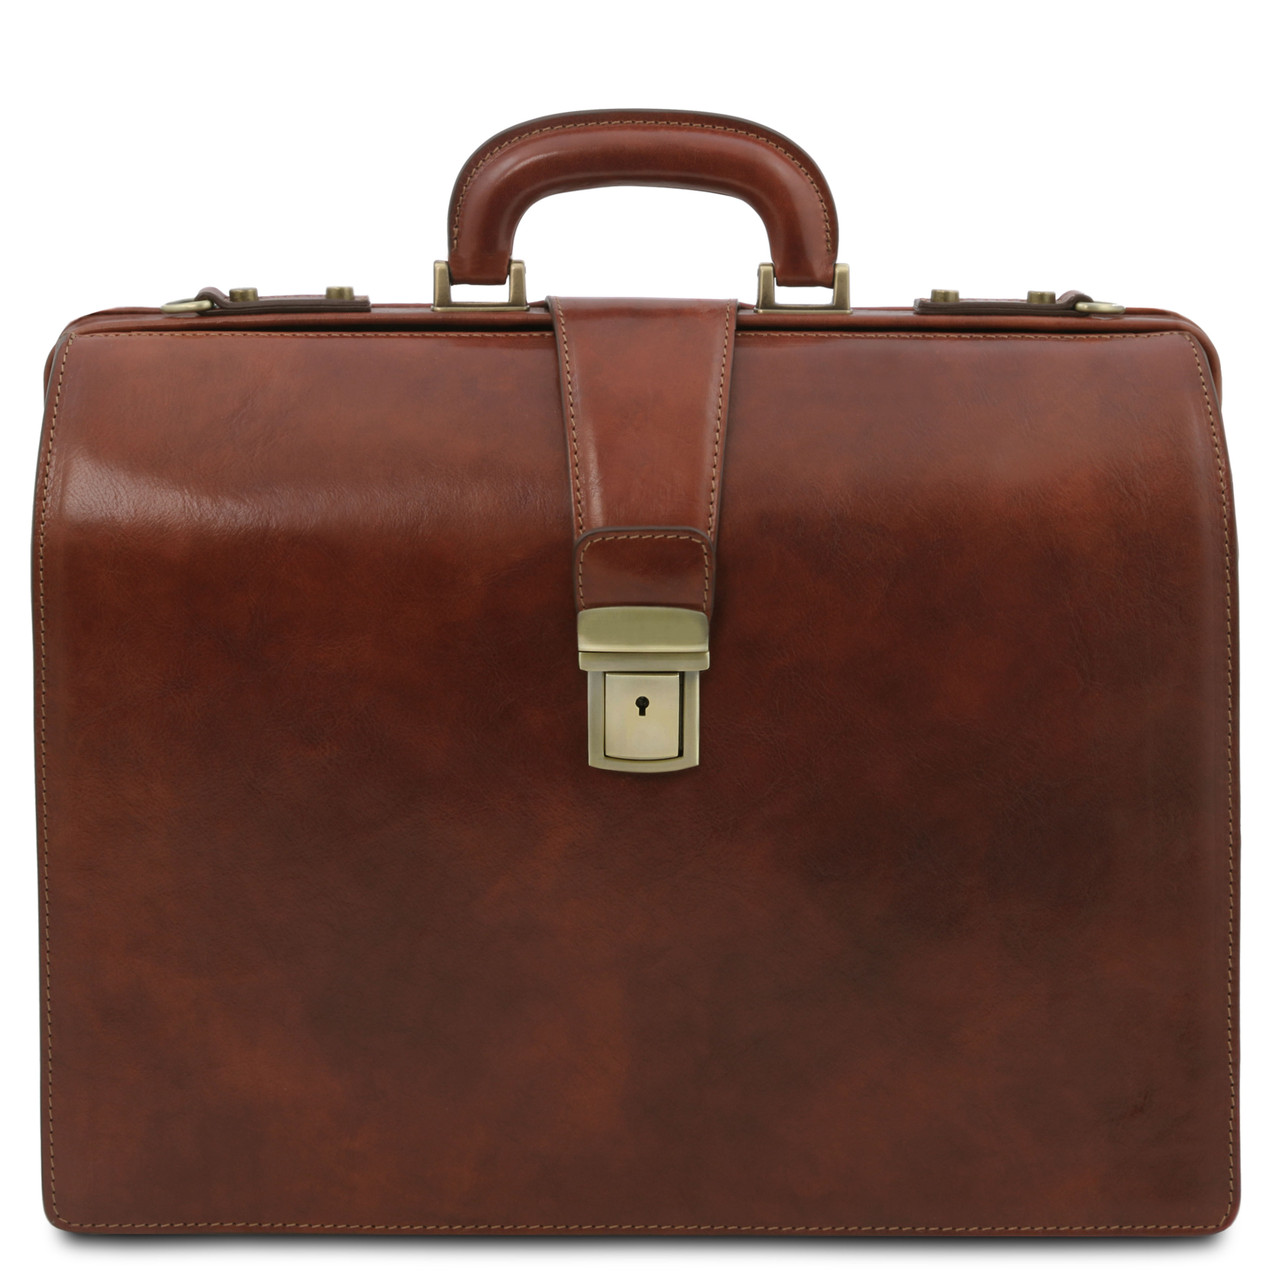 Buccio Tuscany Cannella Brown Italian Leather Briefcase Attorney Briefbag